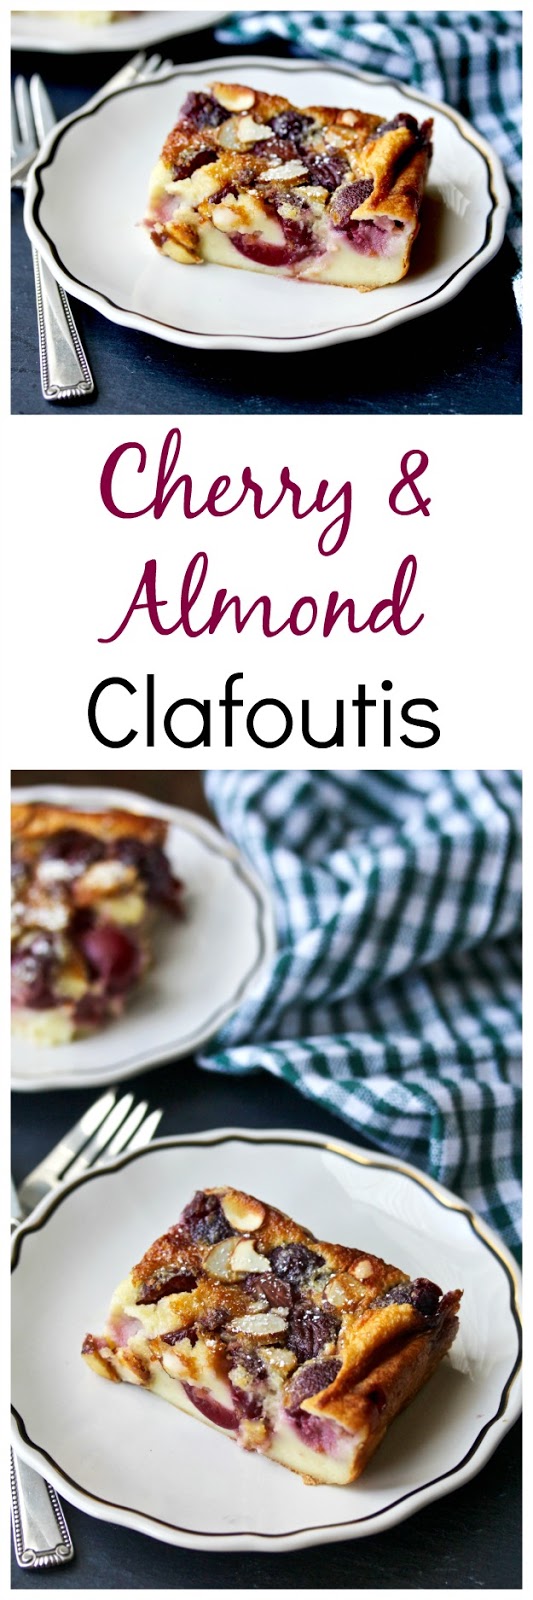 Fresh Cherry custard dessert with almonds #clafoutis #cherries #almonds